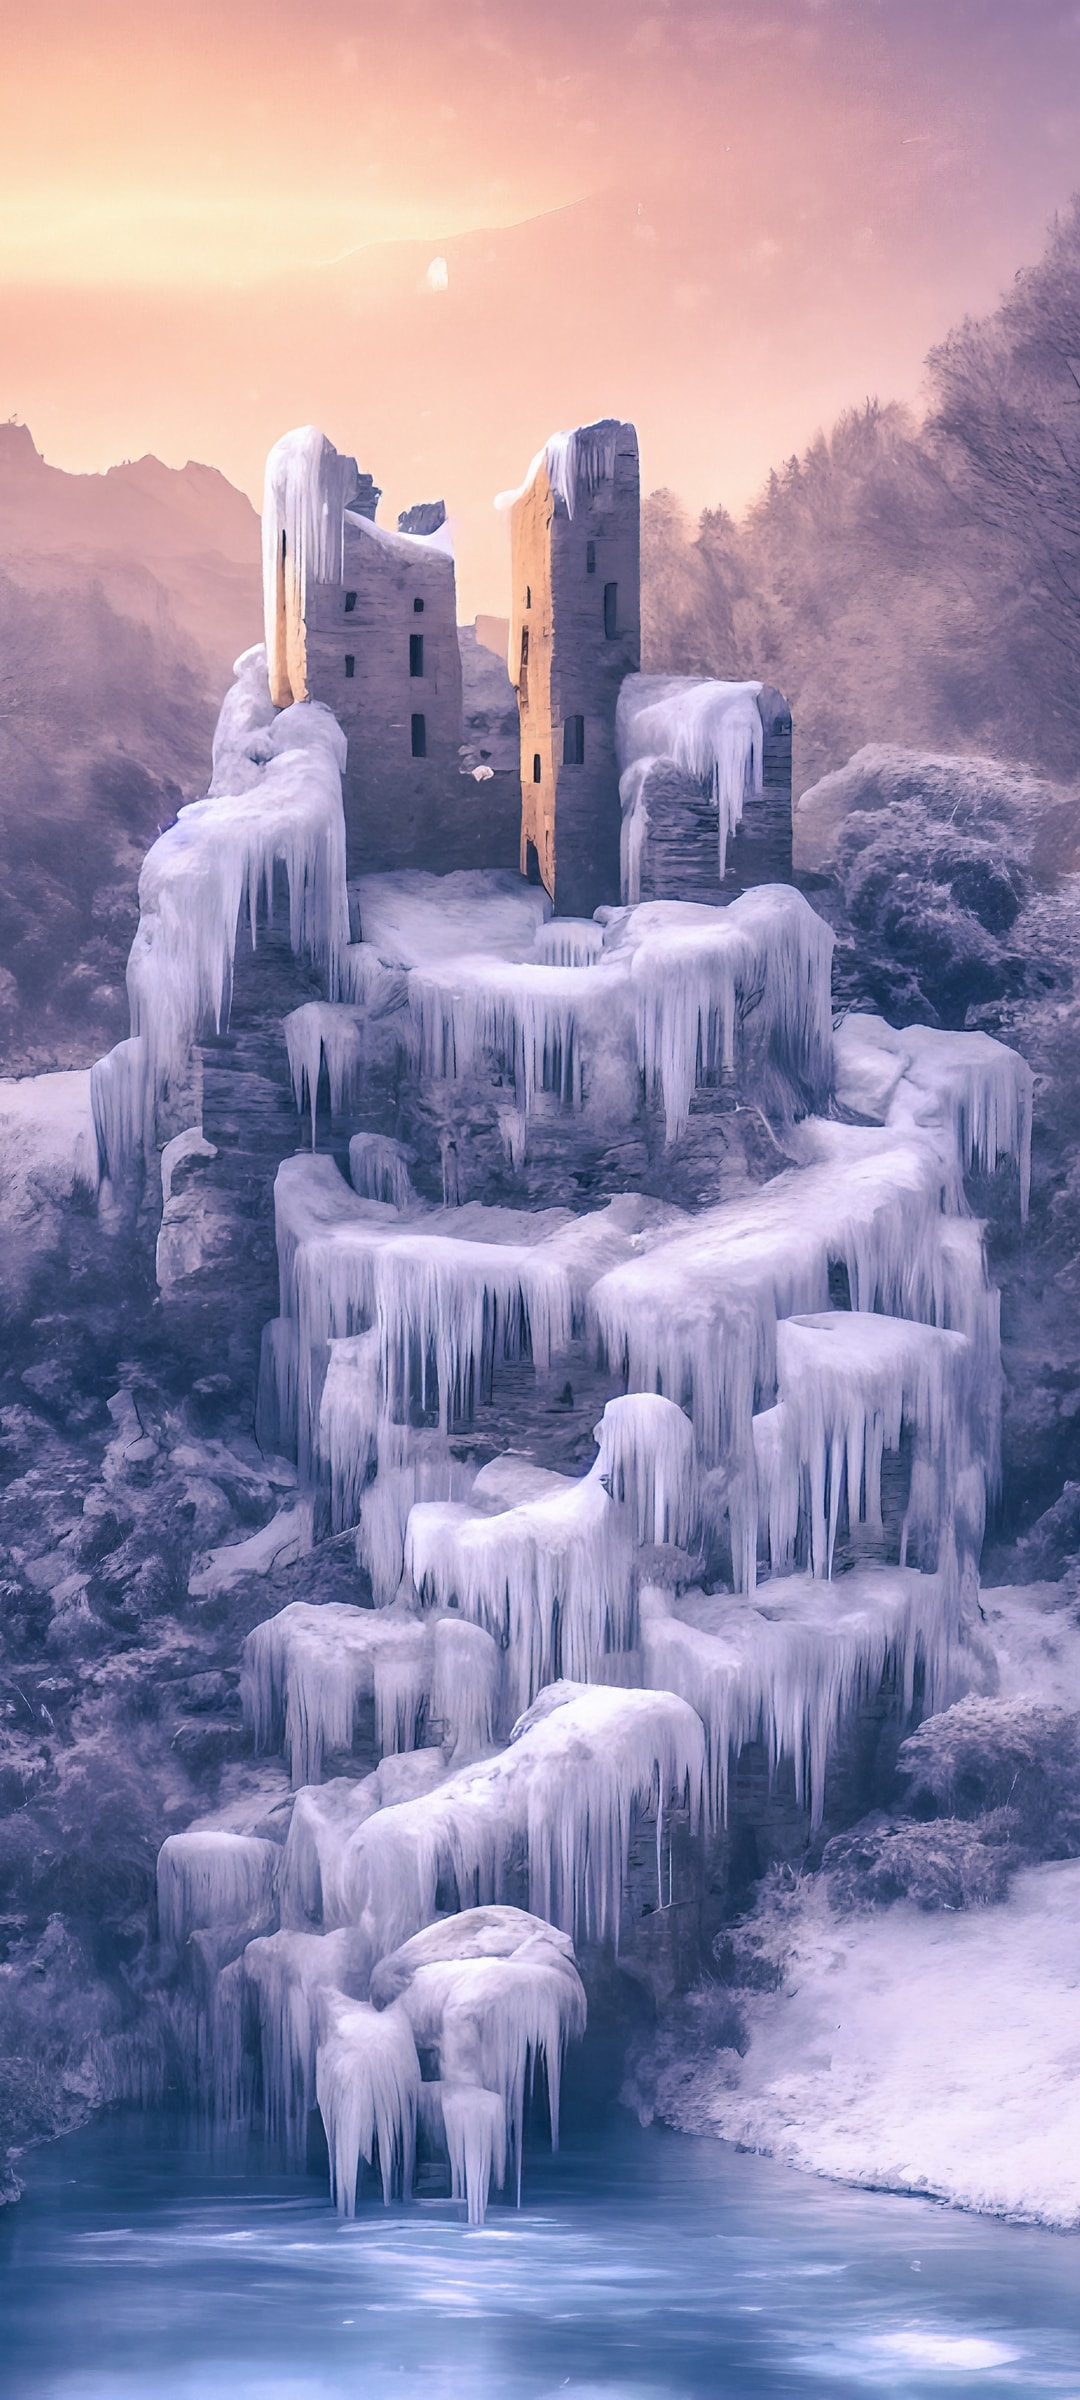 冬天极寒天气下的城堡结冰风景手机壁纸